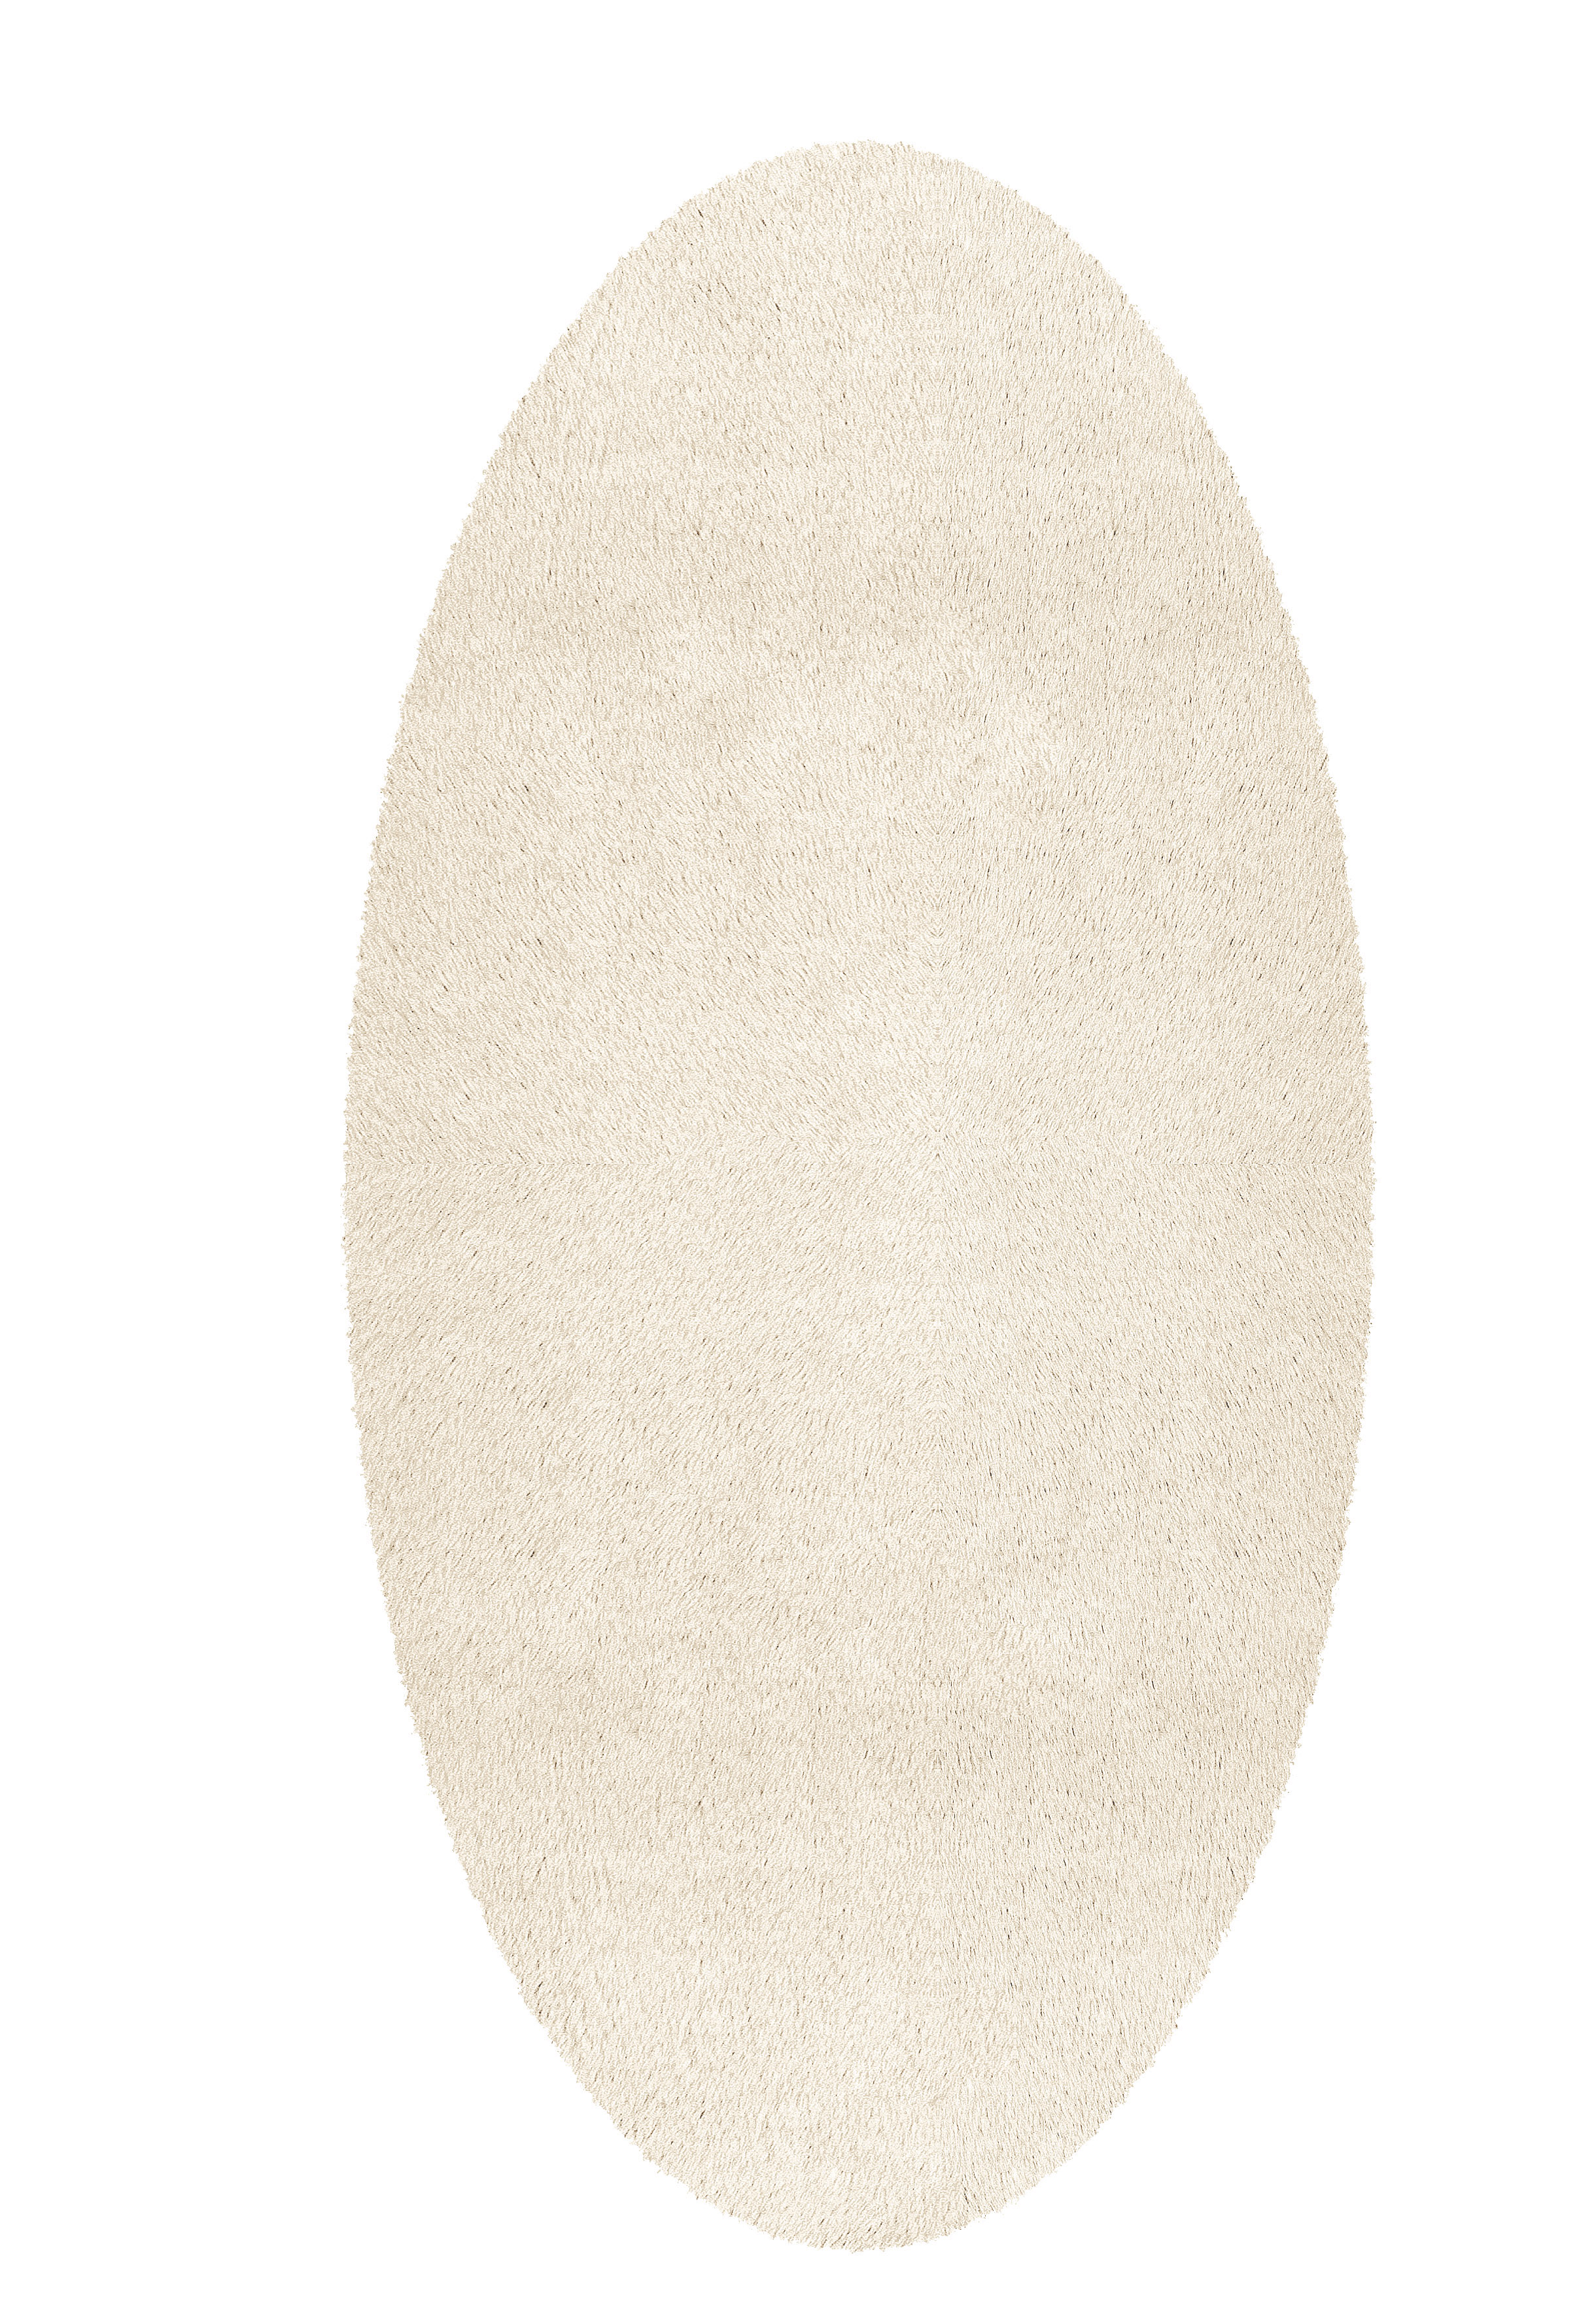 Badteppich Cony Oval, Beige, 60x110 cm